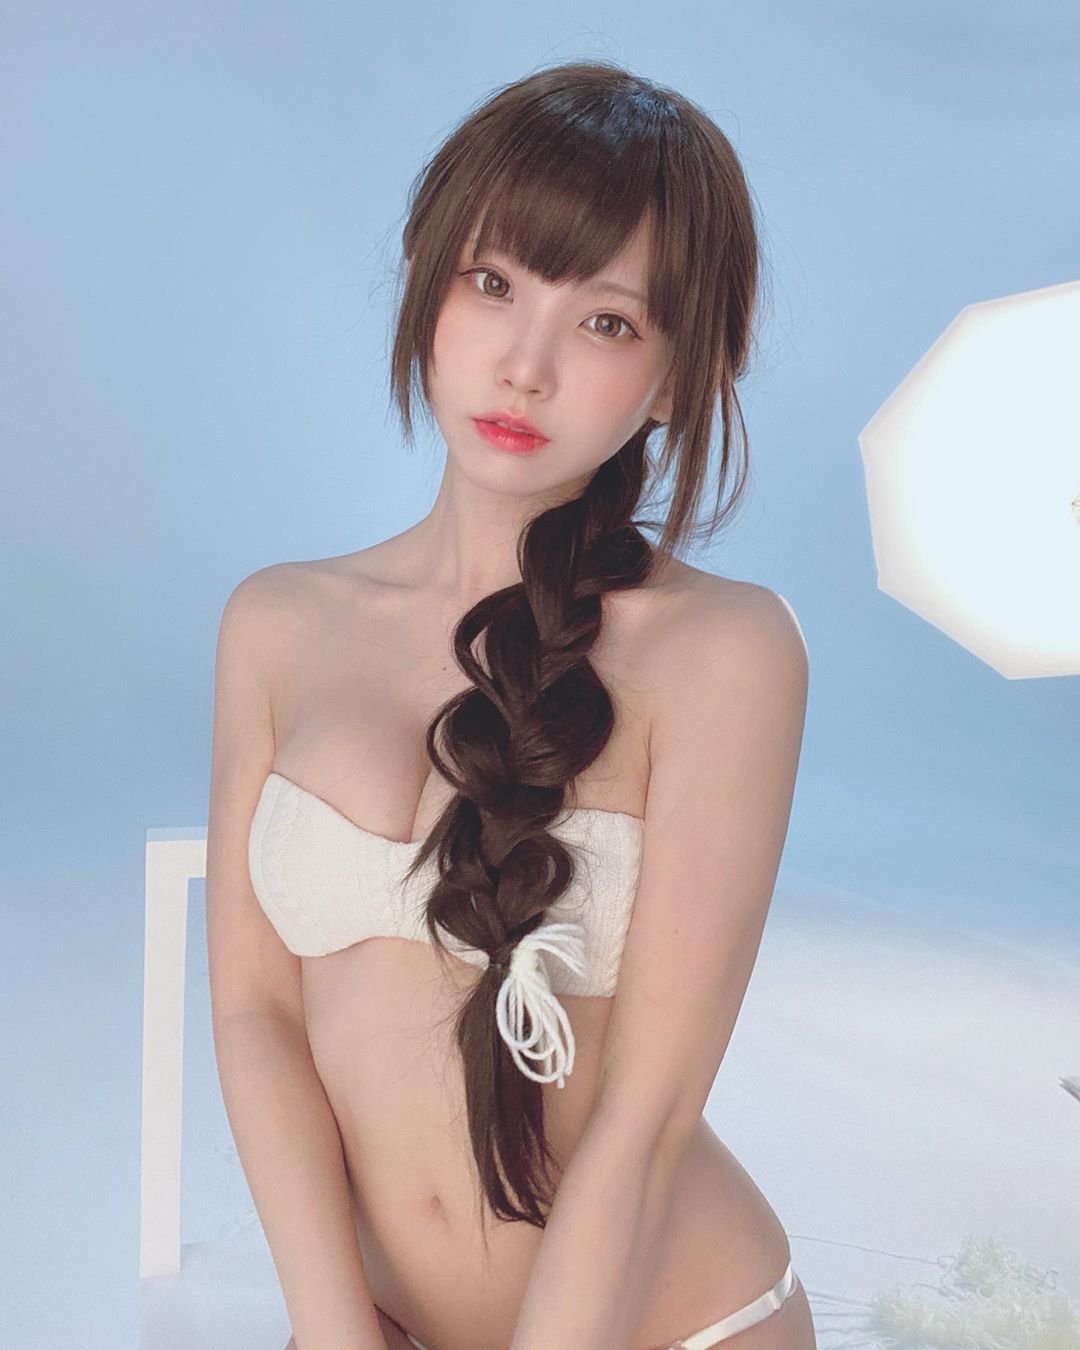 日本第一美女 COSER！最新「Enako」性感写真画面曝光，邪恶视角谁受得了…